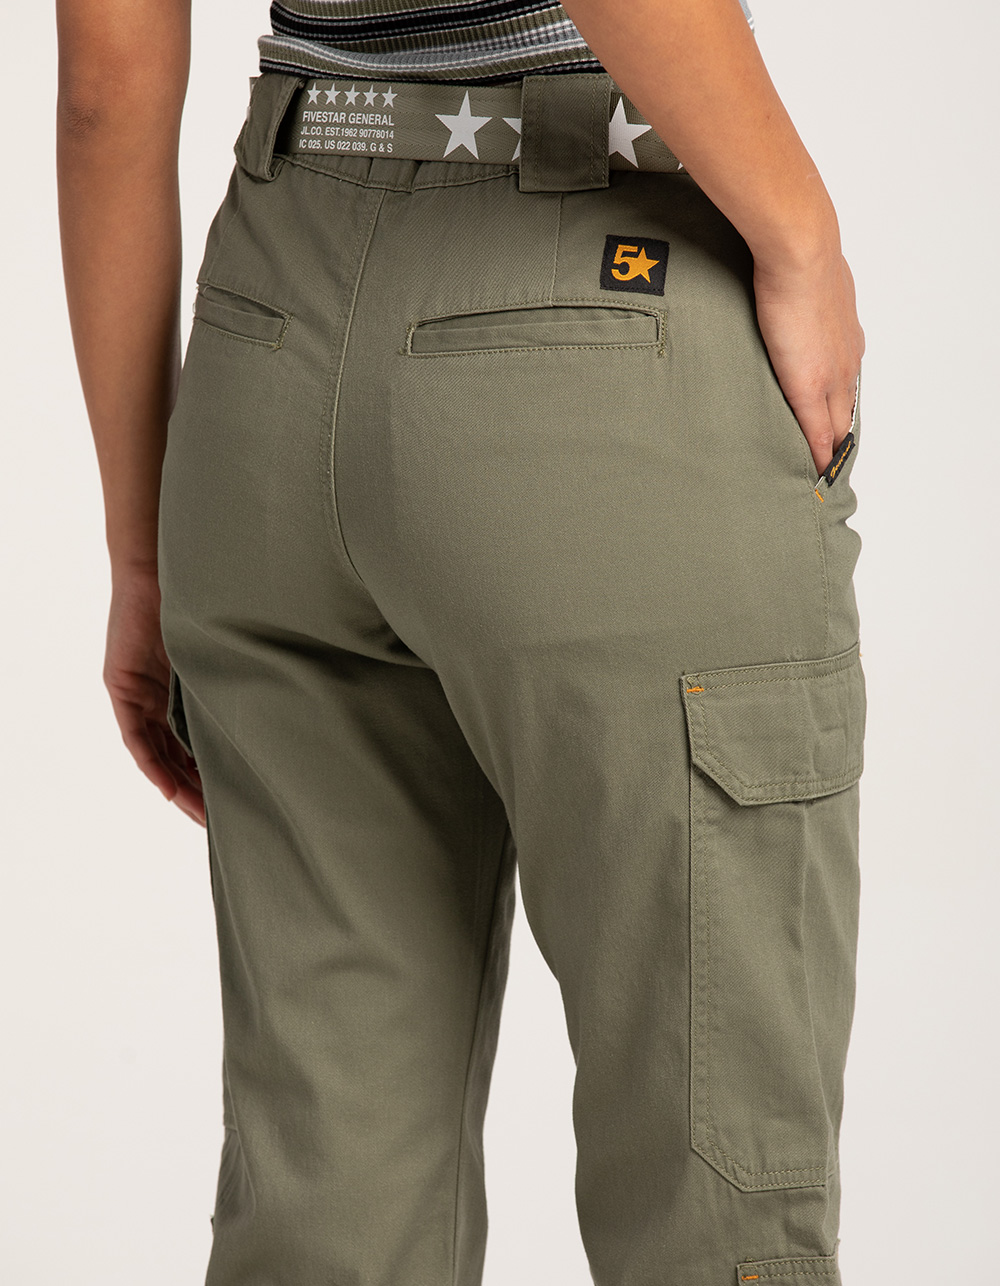 FIVESTAR GENERAL CO. Sierra Womens Cargo Pants - OLIVE